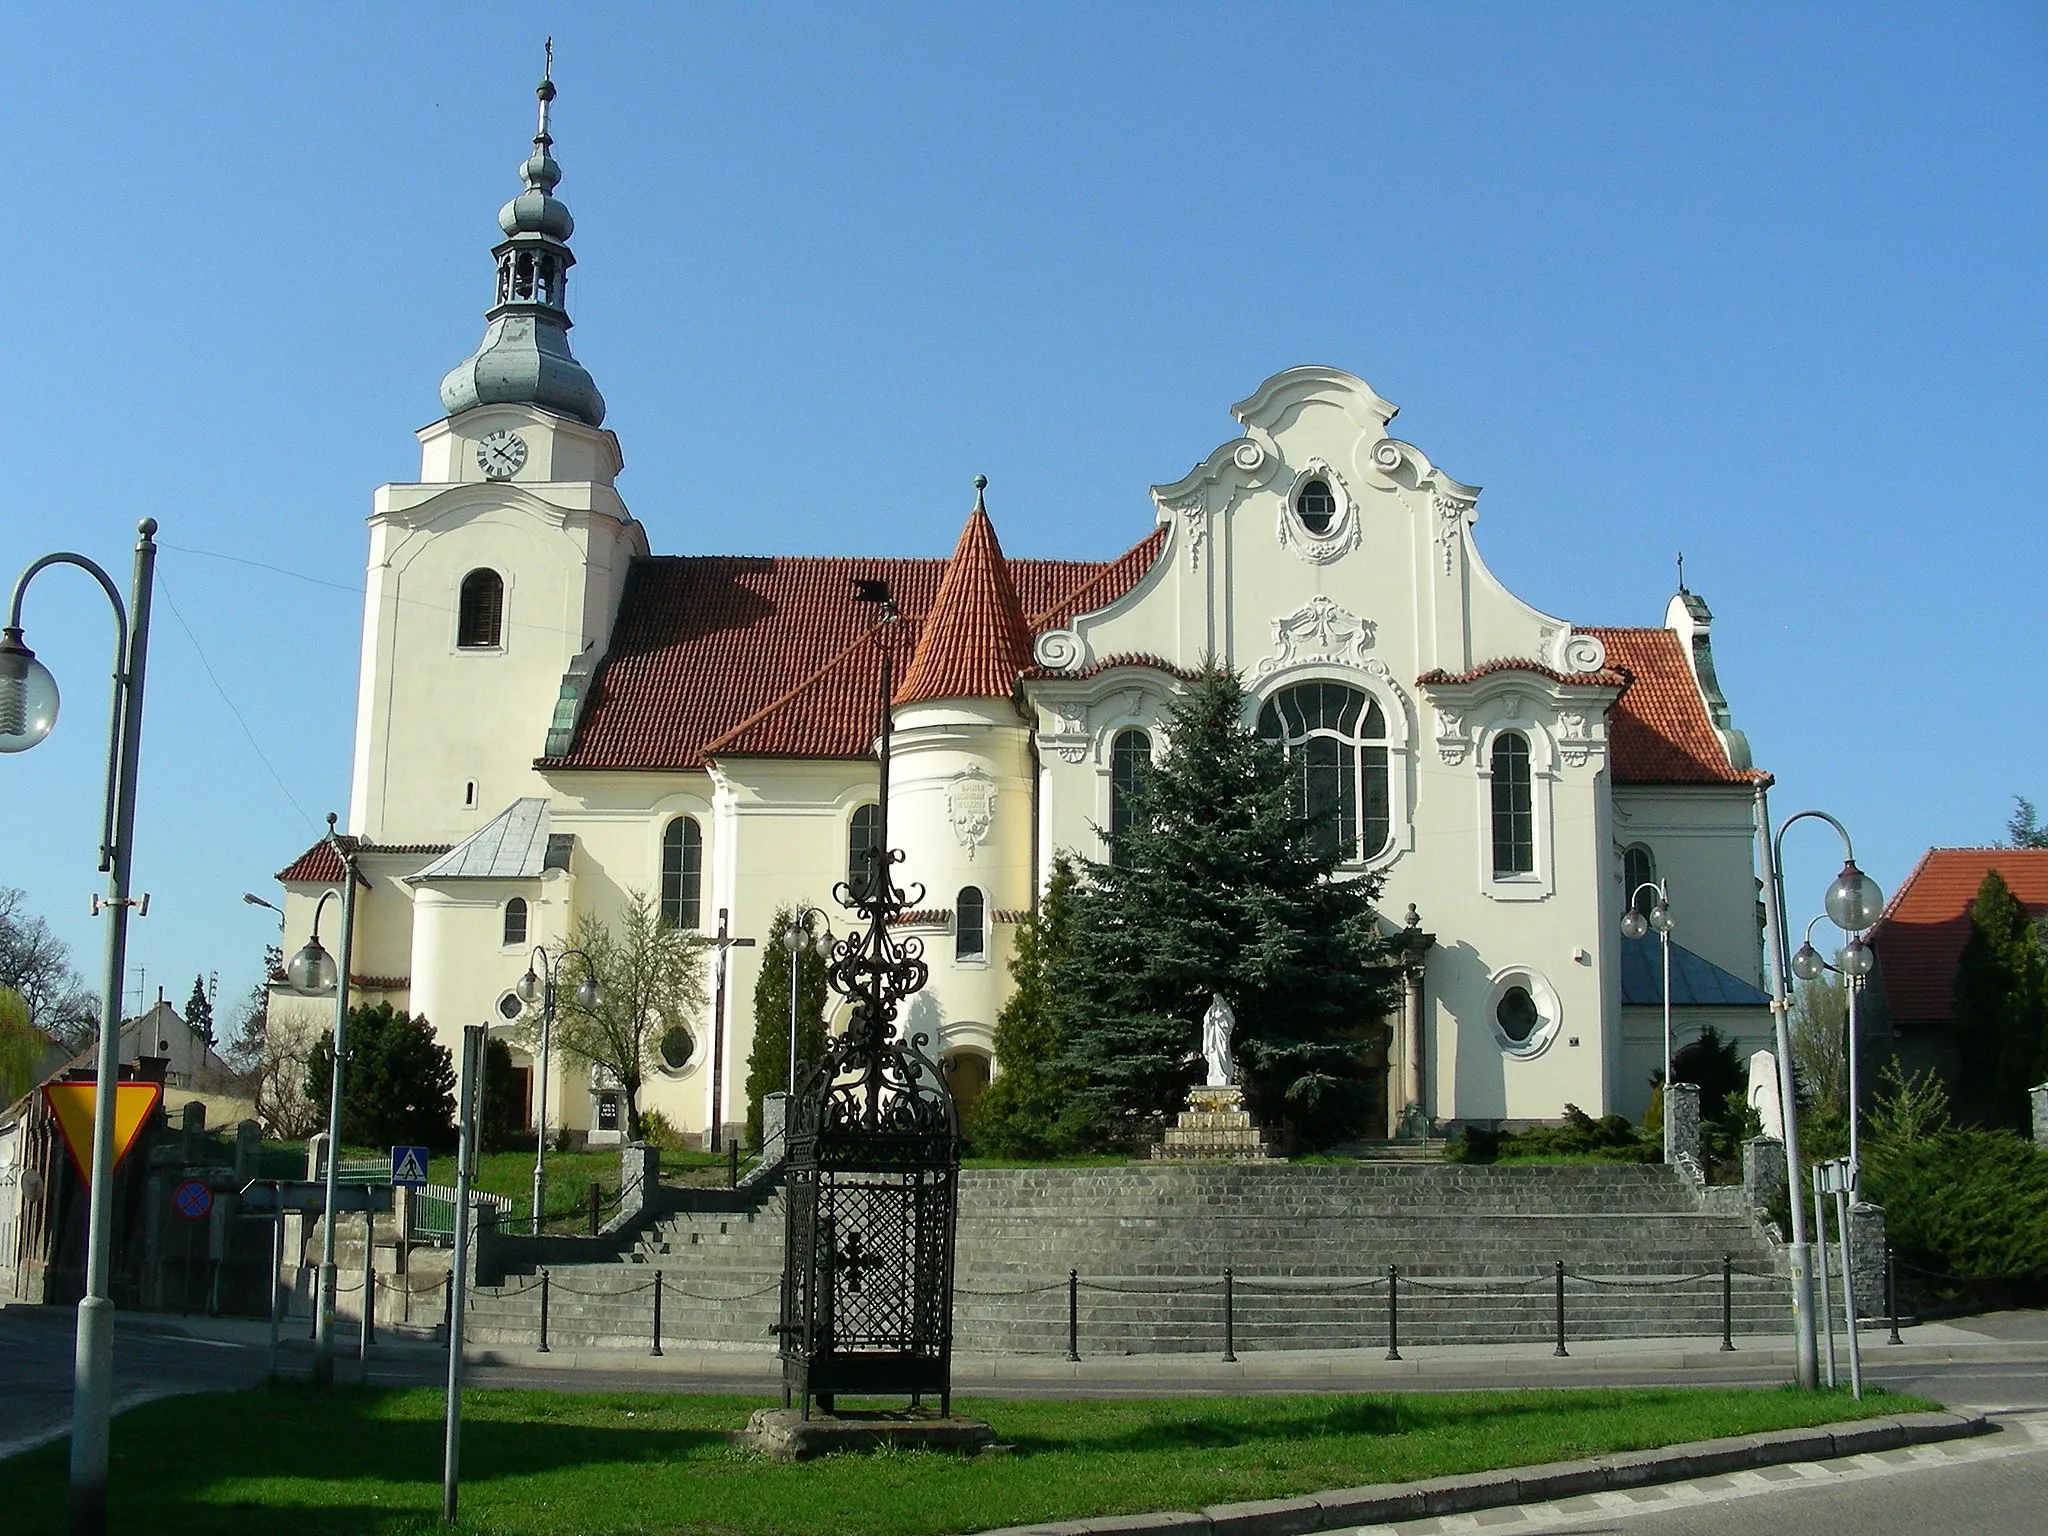 Image of Korfantów